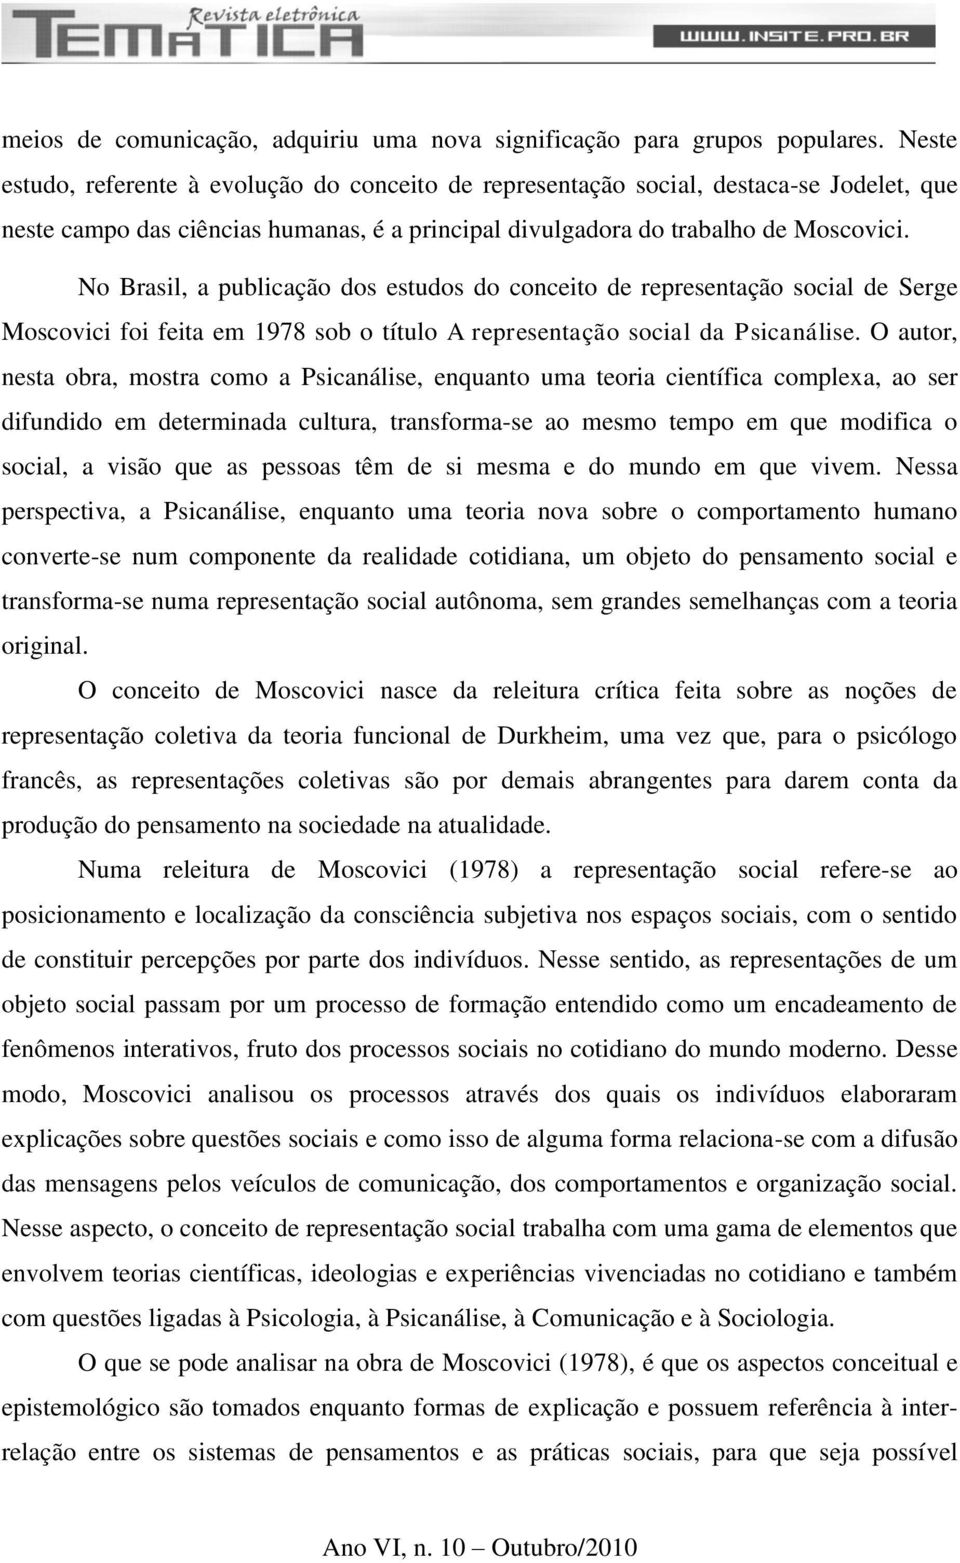 No Brasil, a publicação dos estudos do conceito de representação social de Serge Moscovici foi feita em 1978 sob o título A representação social da Psicanálise.